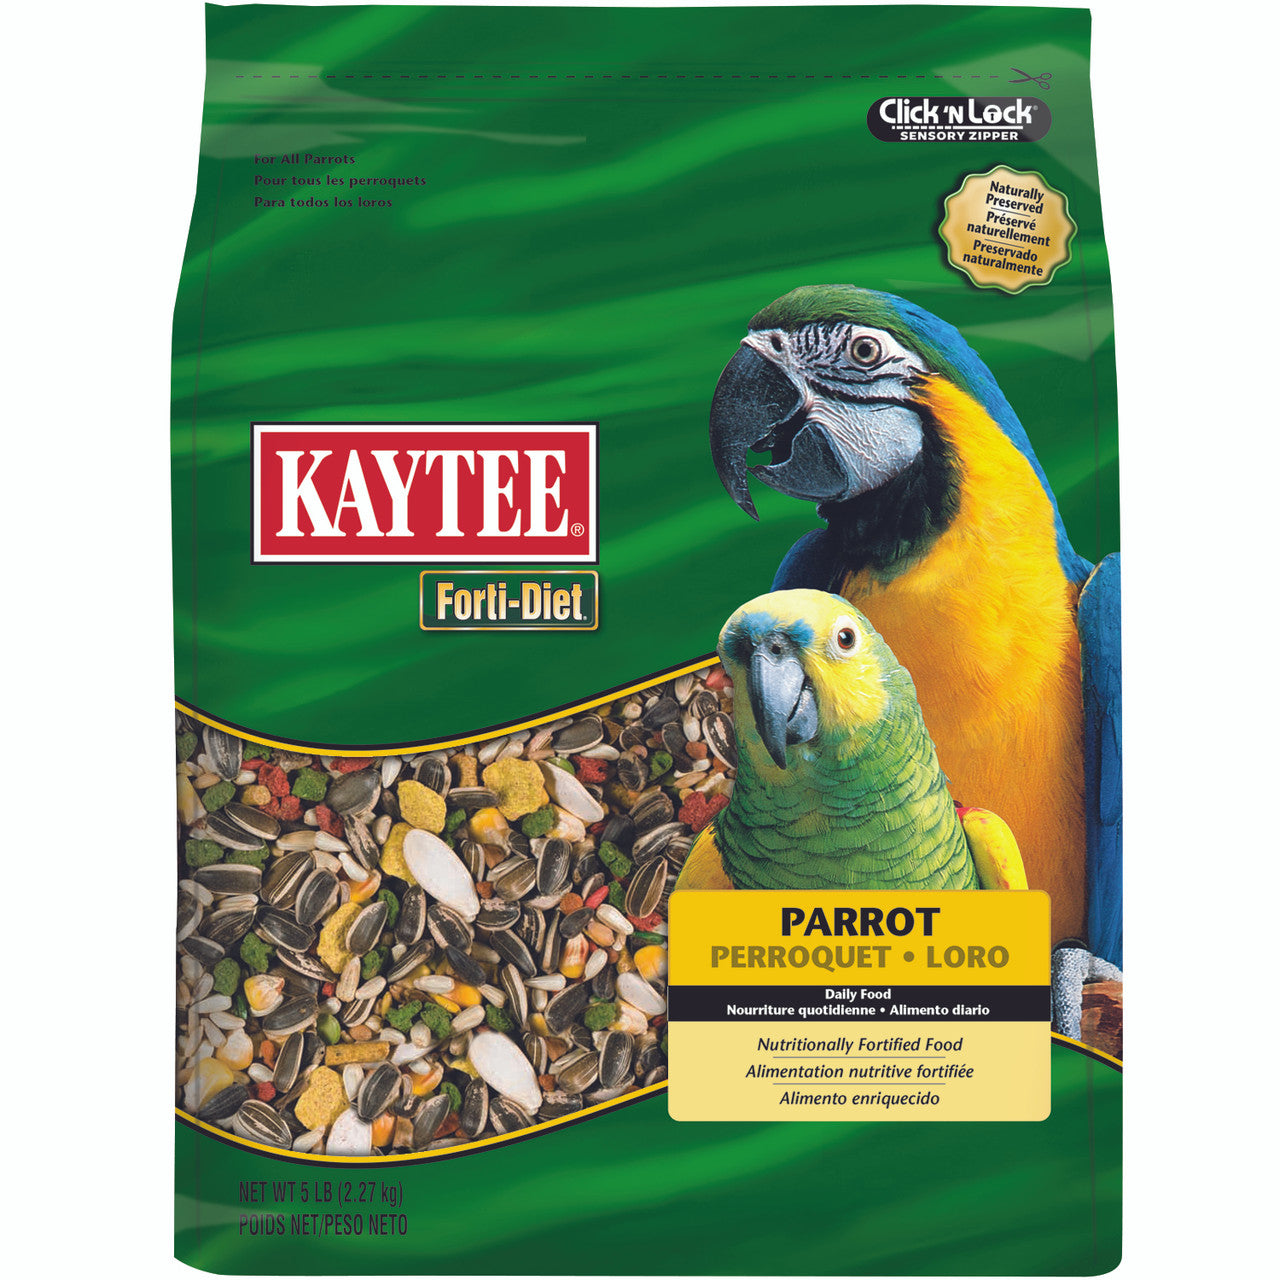 Kaytee Forti-Diet Parrot Food, 5 lb